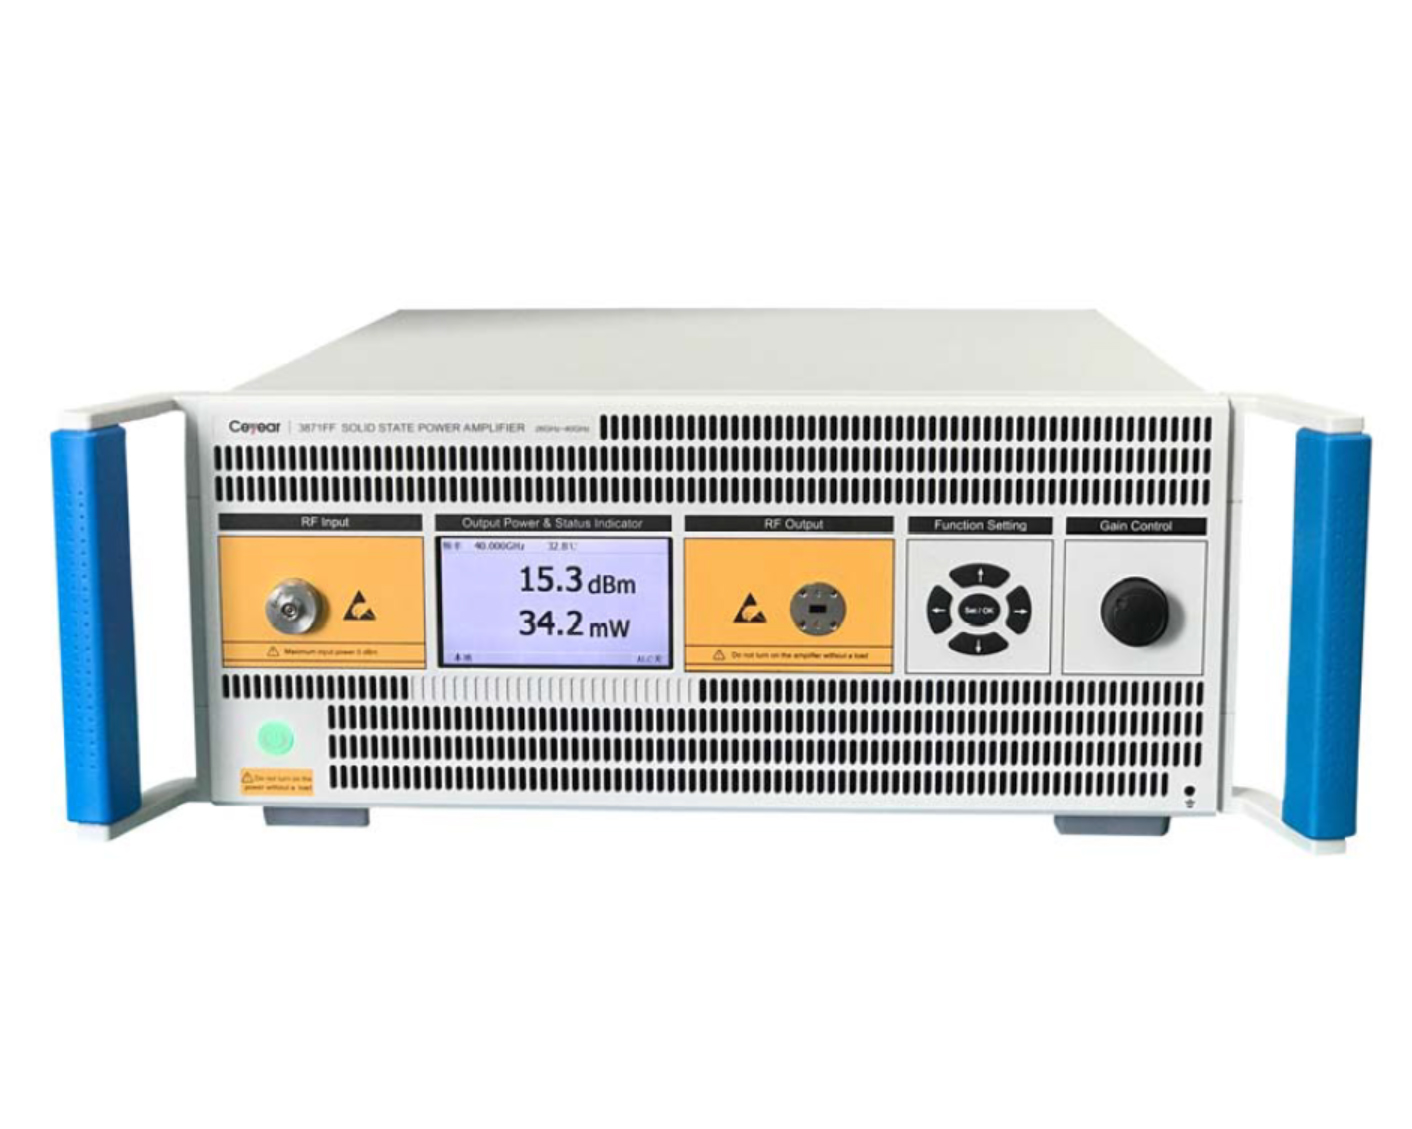 Твердотельные усилители мощности <b>Ceyear серии 387XX</b> с диапазоном частот от 9 кГц до 110 ГГц